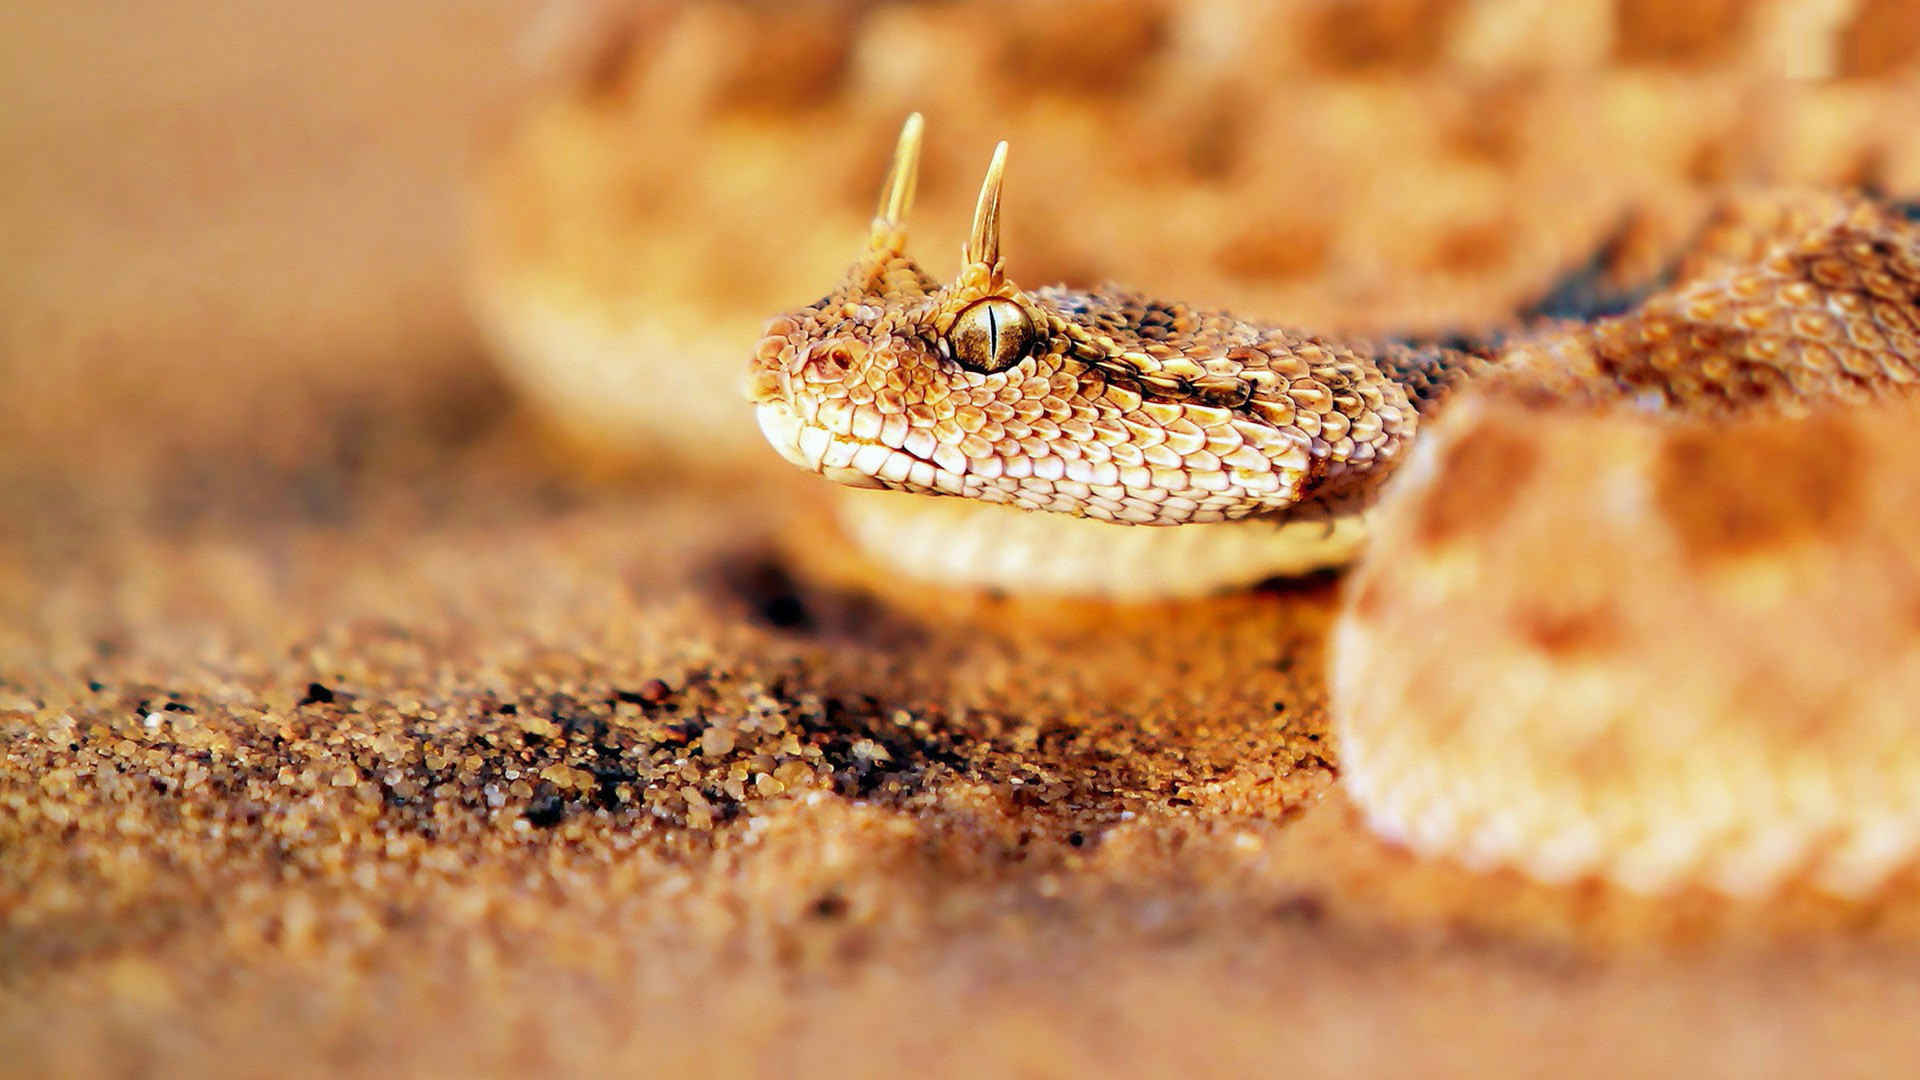 沙地的响尾蛇近照摄影高清电脑壁纸-